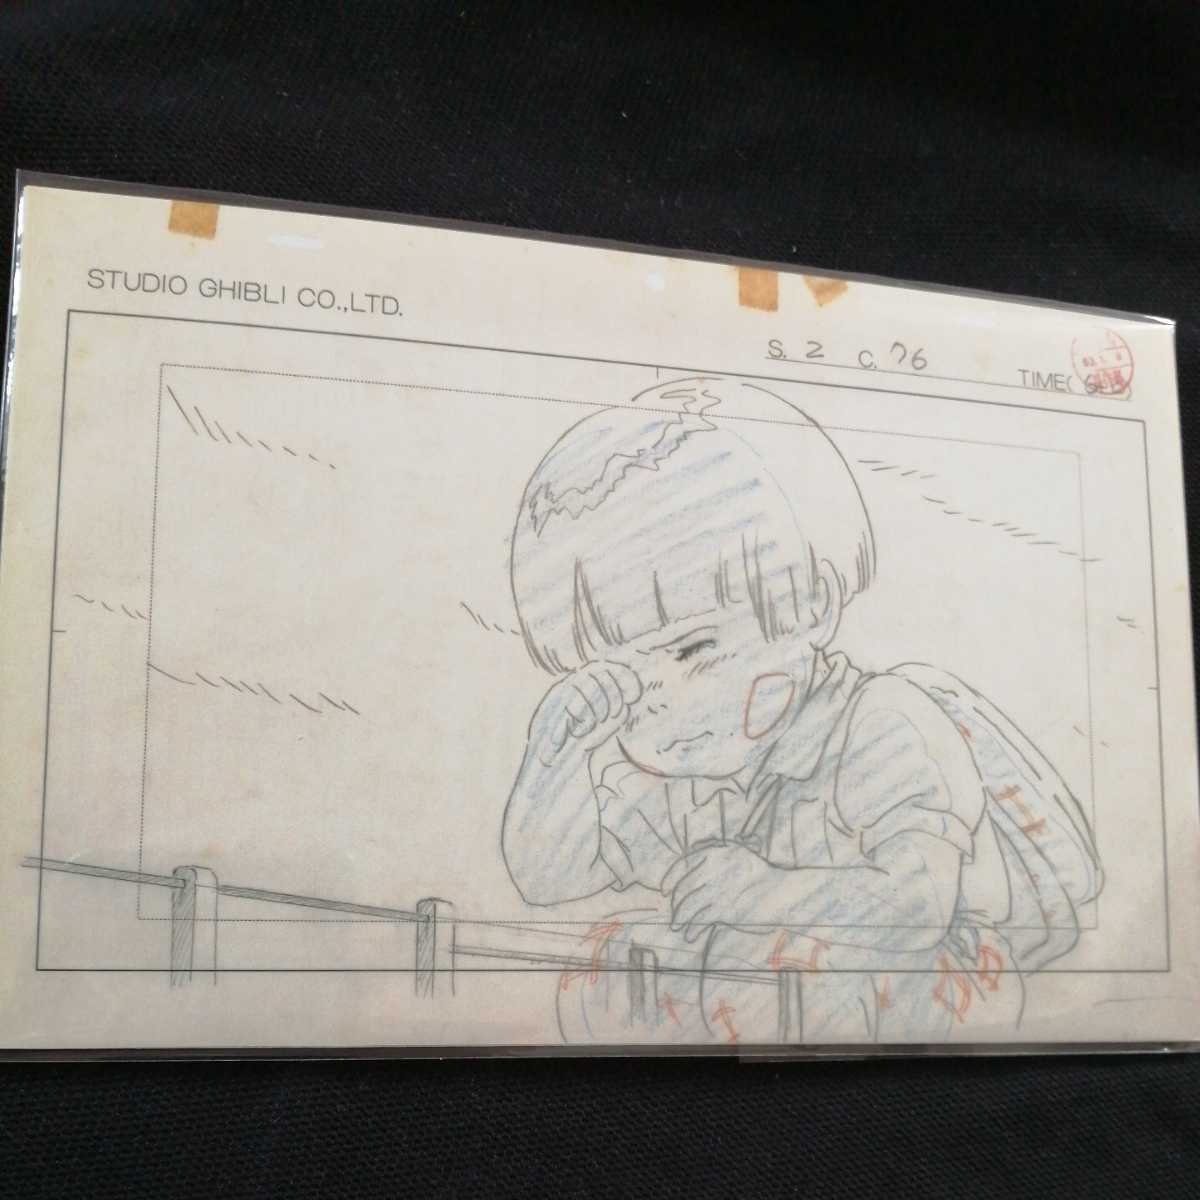  Studio Ghibli огонь сидэ .. . расположение порез . осмотр ) Ghibli открытка постер исходная картина цифровая картинка расположение выставка Miyazaki .GHIBLI